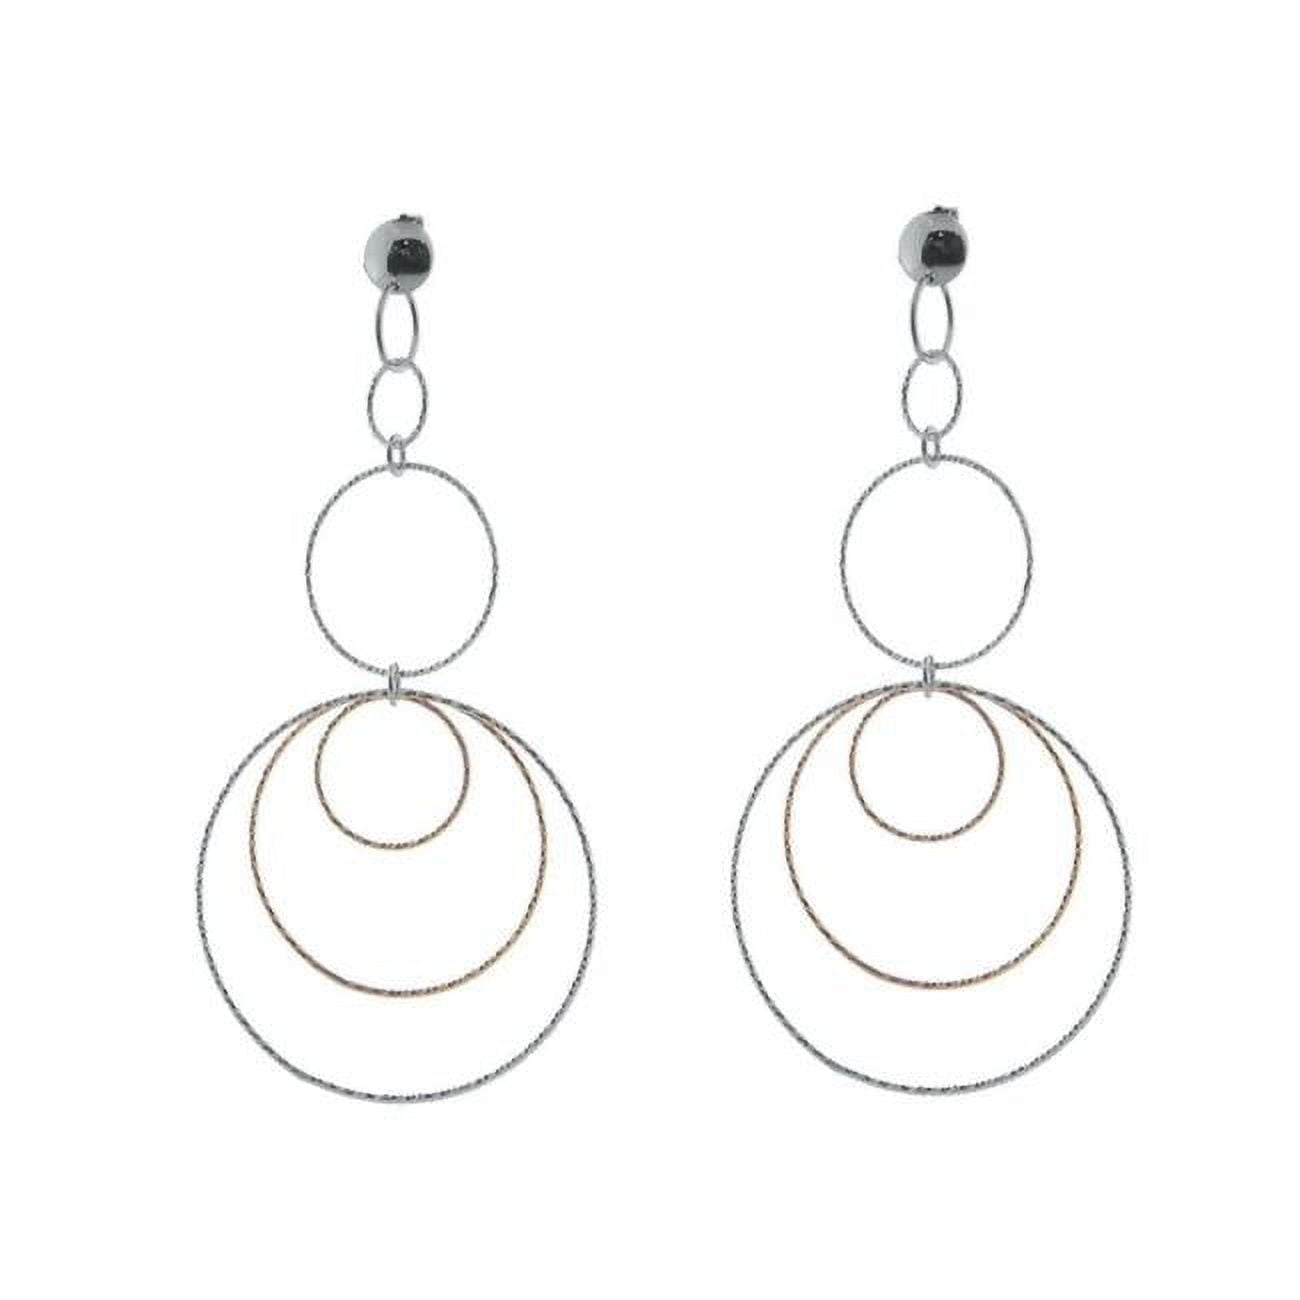 125119b Diamond Cut Concentric Hoop Earrings In Sterling Silver Black & Pink Rhodium